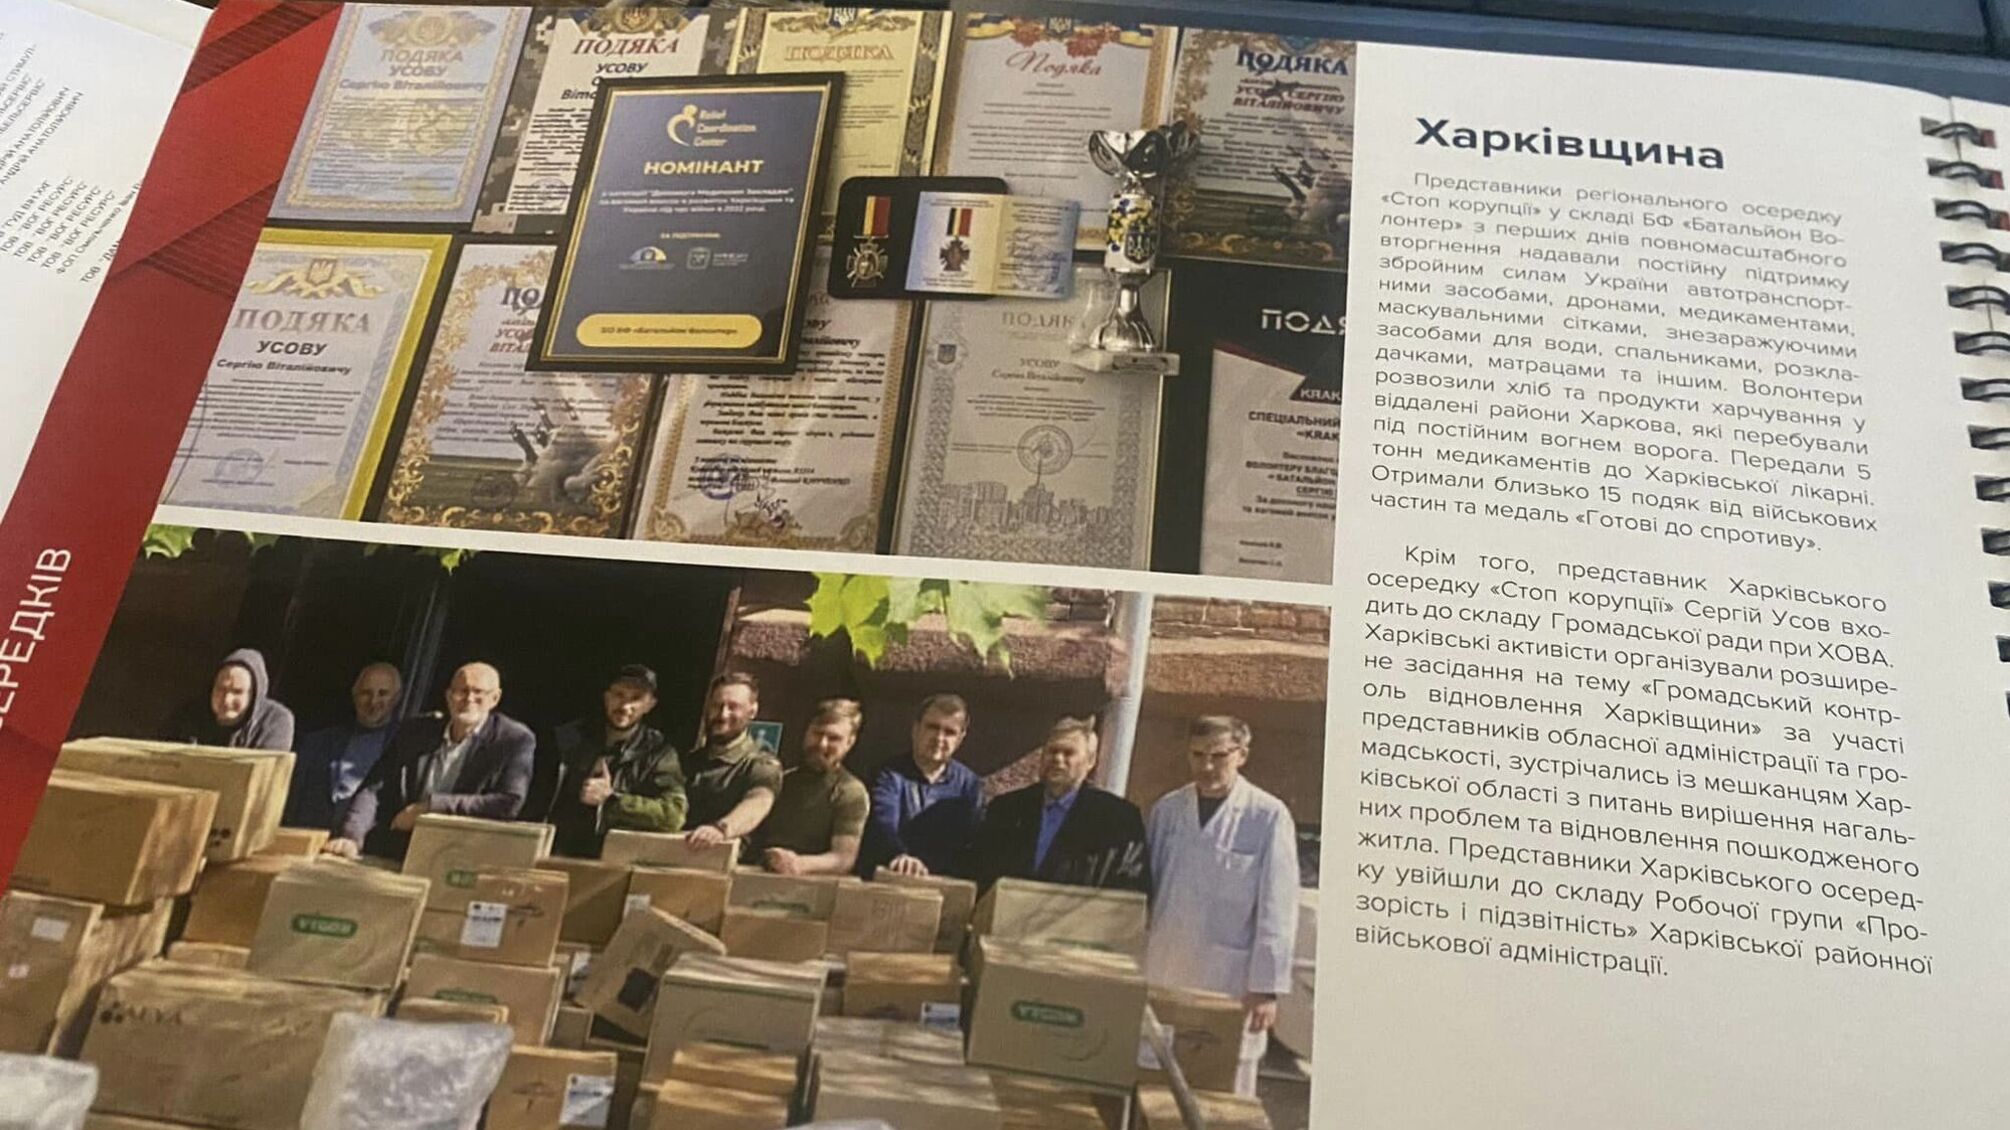 Громадський контроль і волонтерська допомога: як працює 'Стоп корупції' на Харківщині 